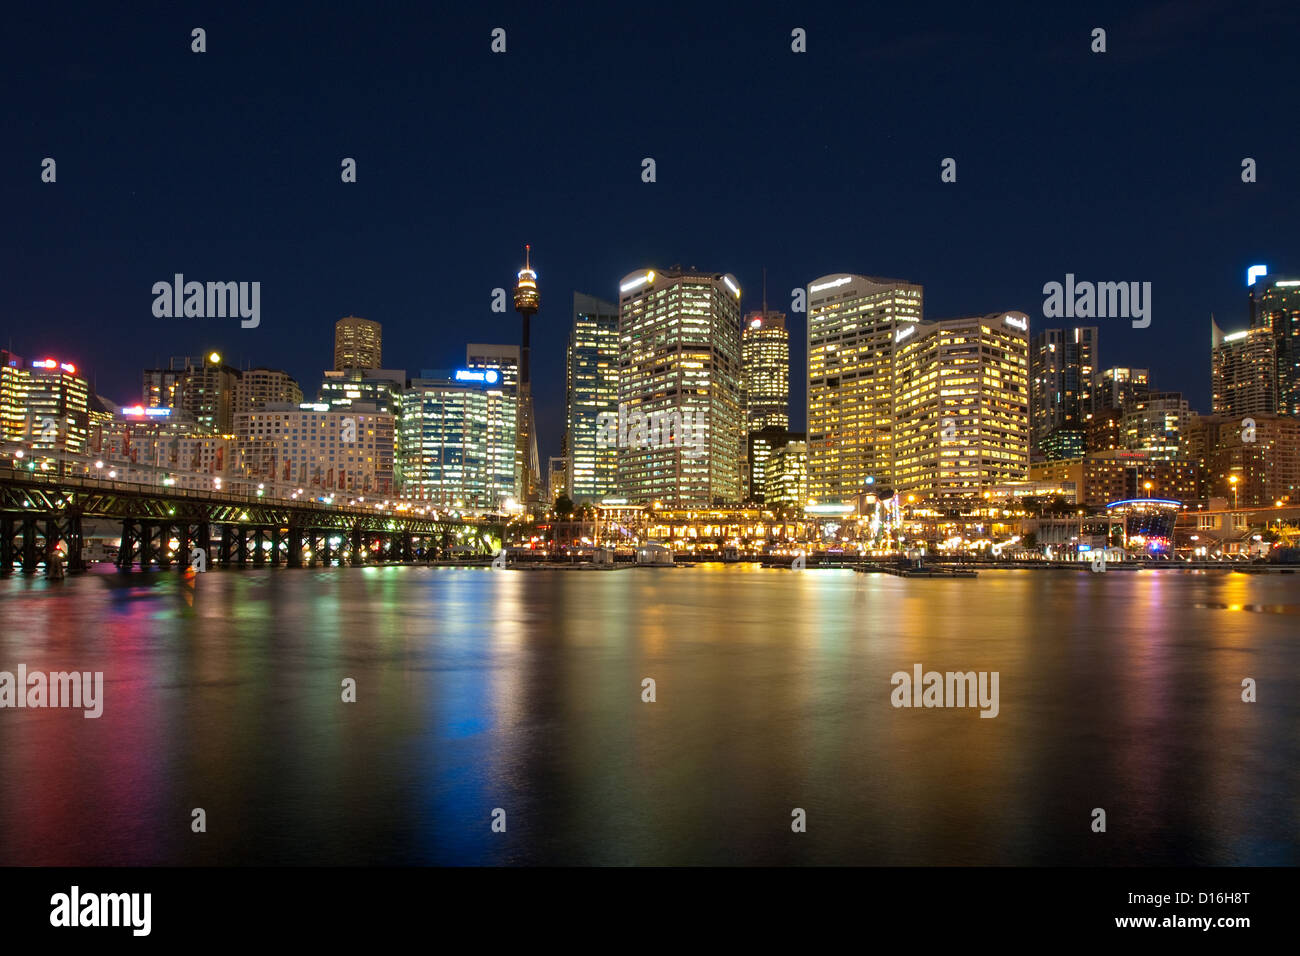 La notte spettacolare skyline di Sydney, Australia come si vede dal Darling Harbour. Foto Stock